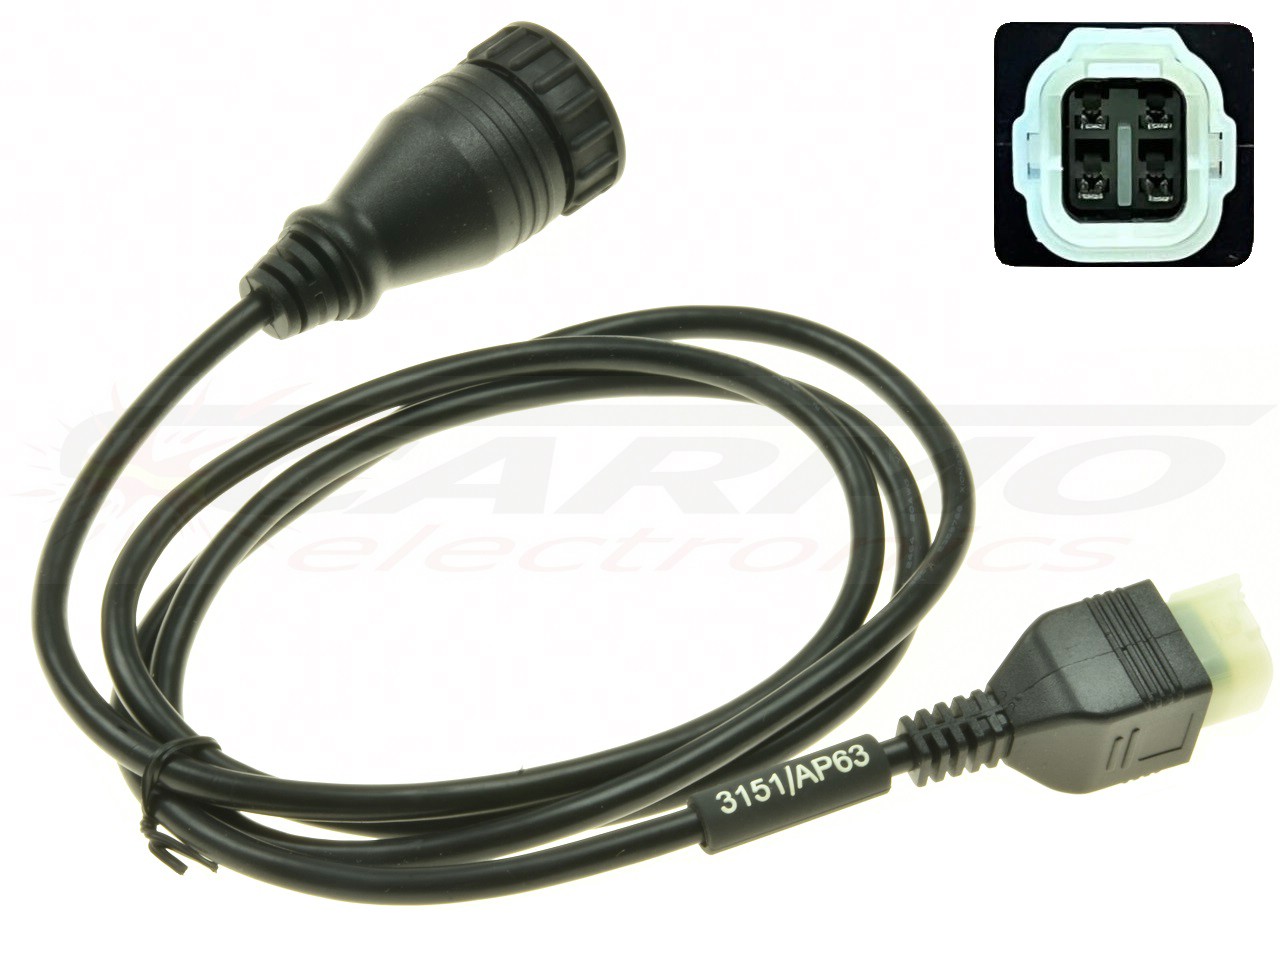 3151/AP63 Motorcycle KYMCO QUAD diagnostic cable TEXA-3911967 - Clique na Imagem para Fechar